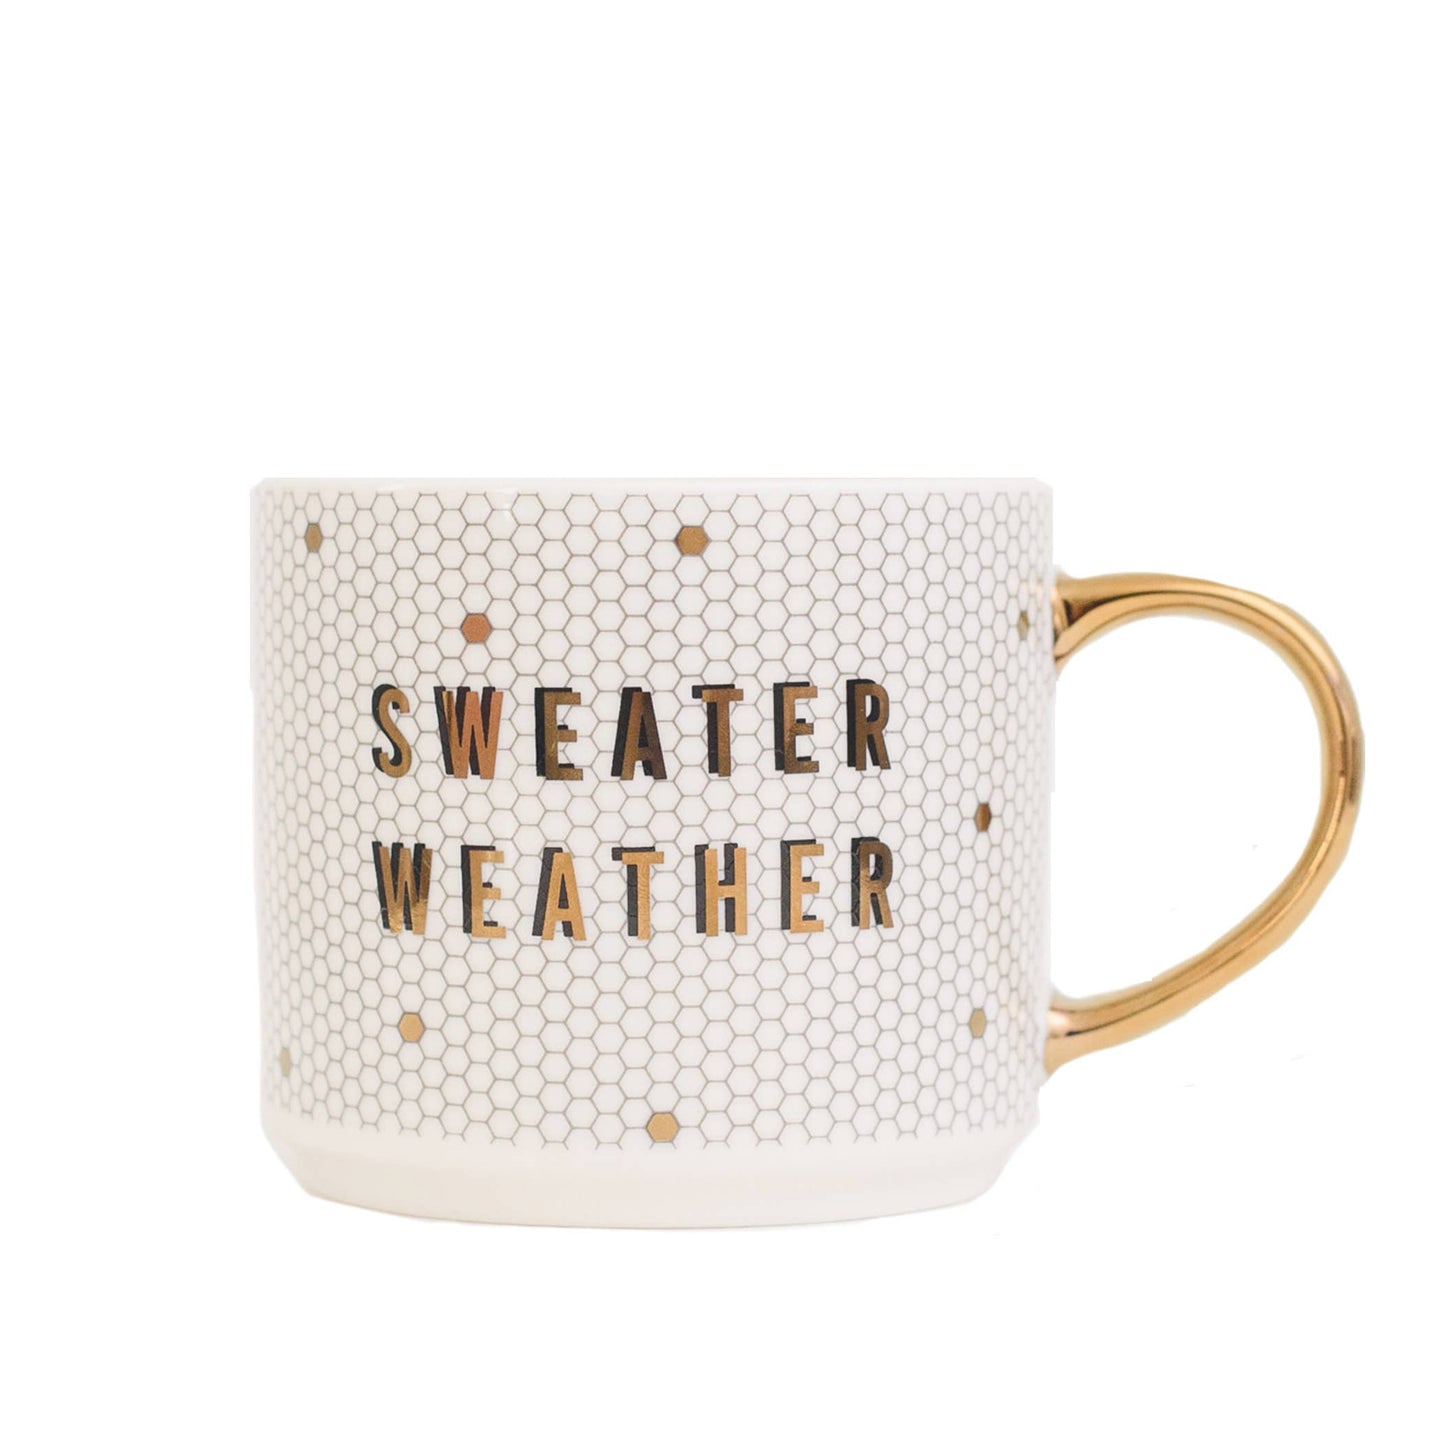 Sweet Water Decor - Sweater Weather Tile Coffee Mug